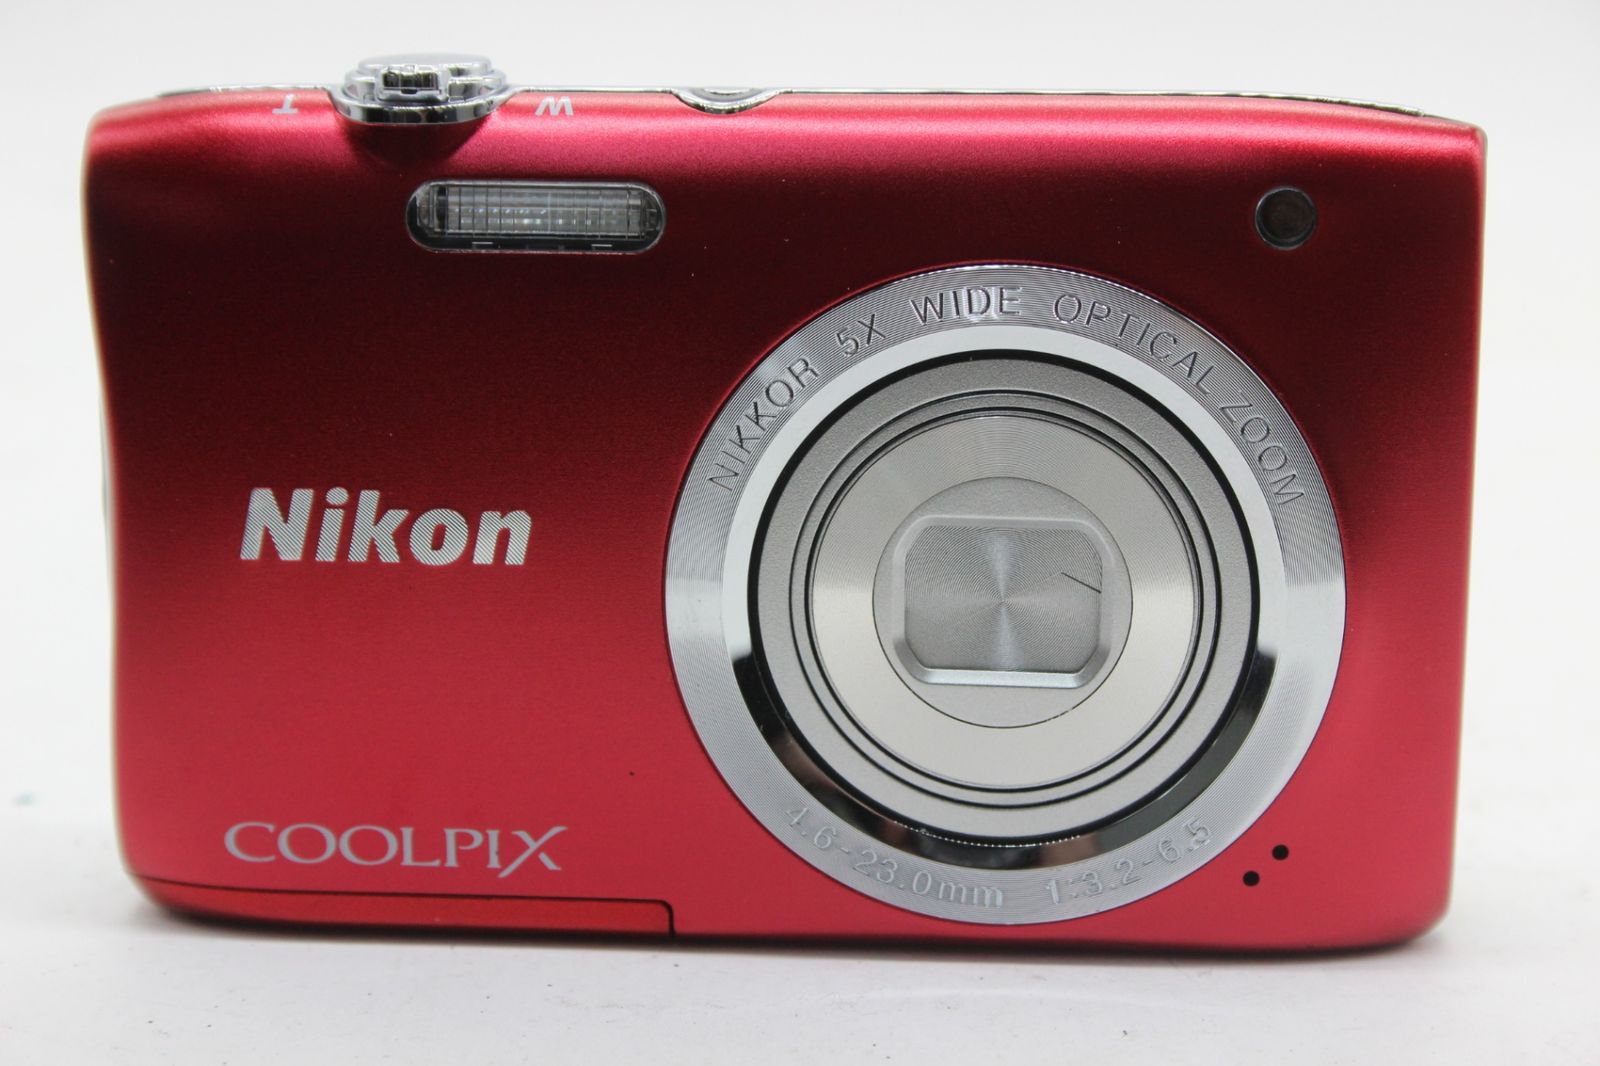 美品 返品保証】 ニコン Nikon Coolpix S2900 レッド 5x バッテリー付き コンパクトデジタルカメラ s9470 - メルカリ